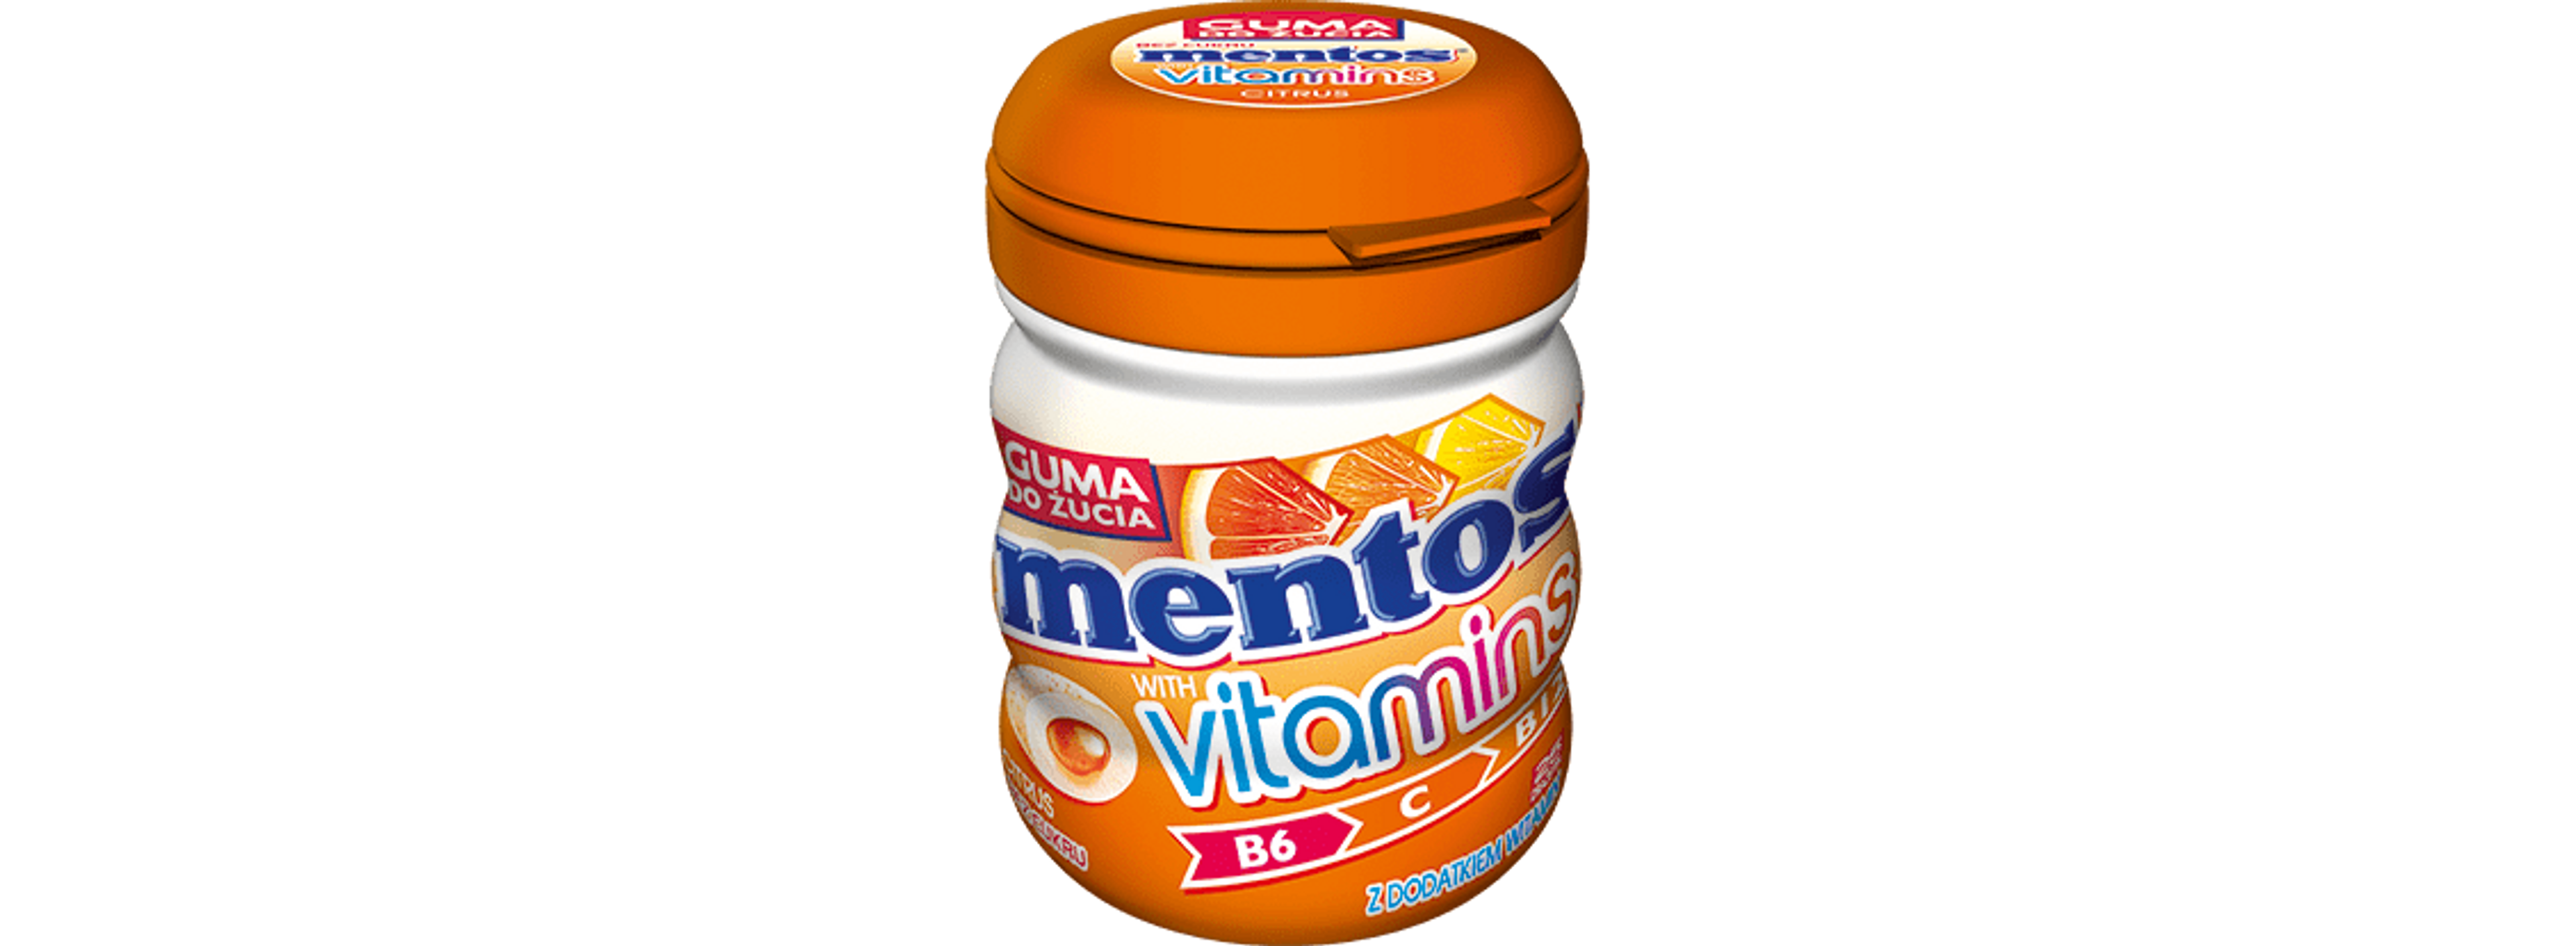 Mentos Vitamins Gum CITRUS